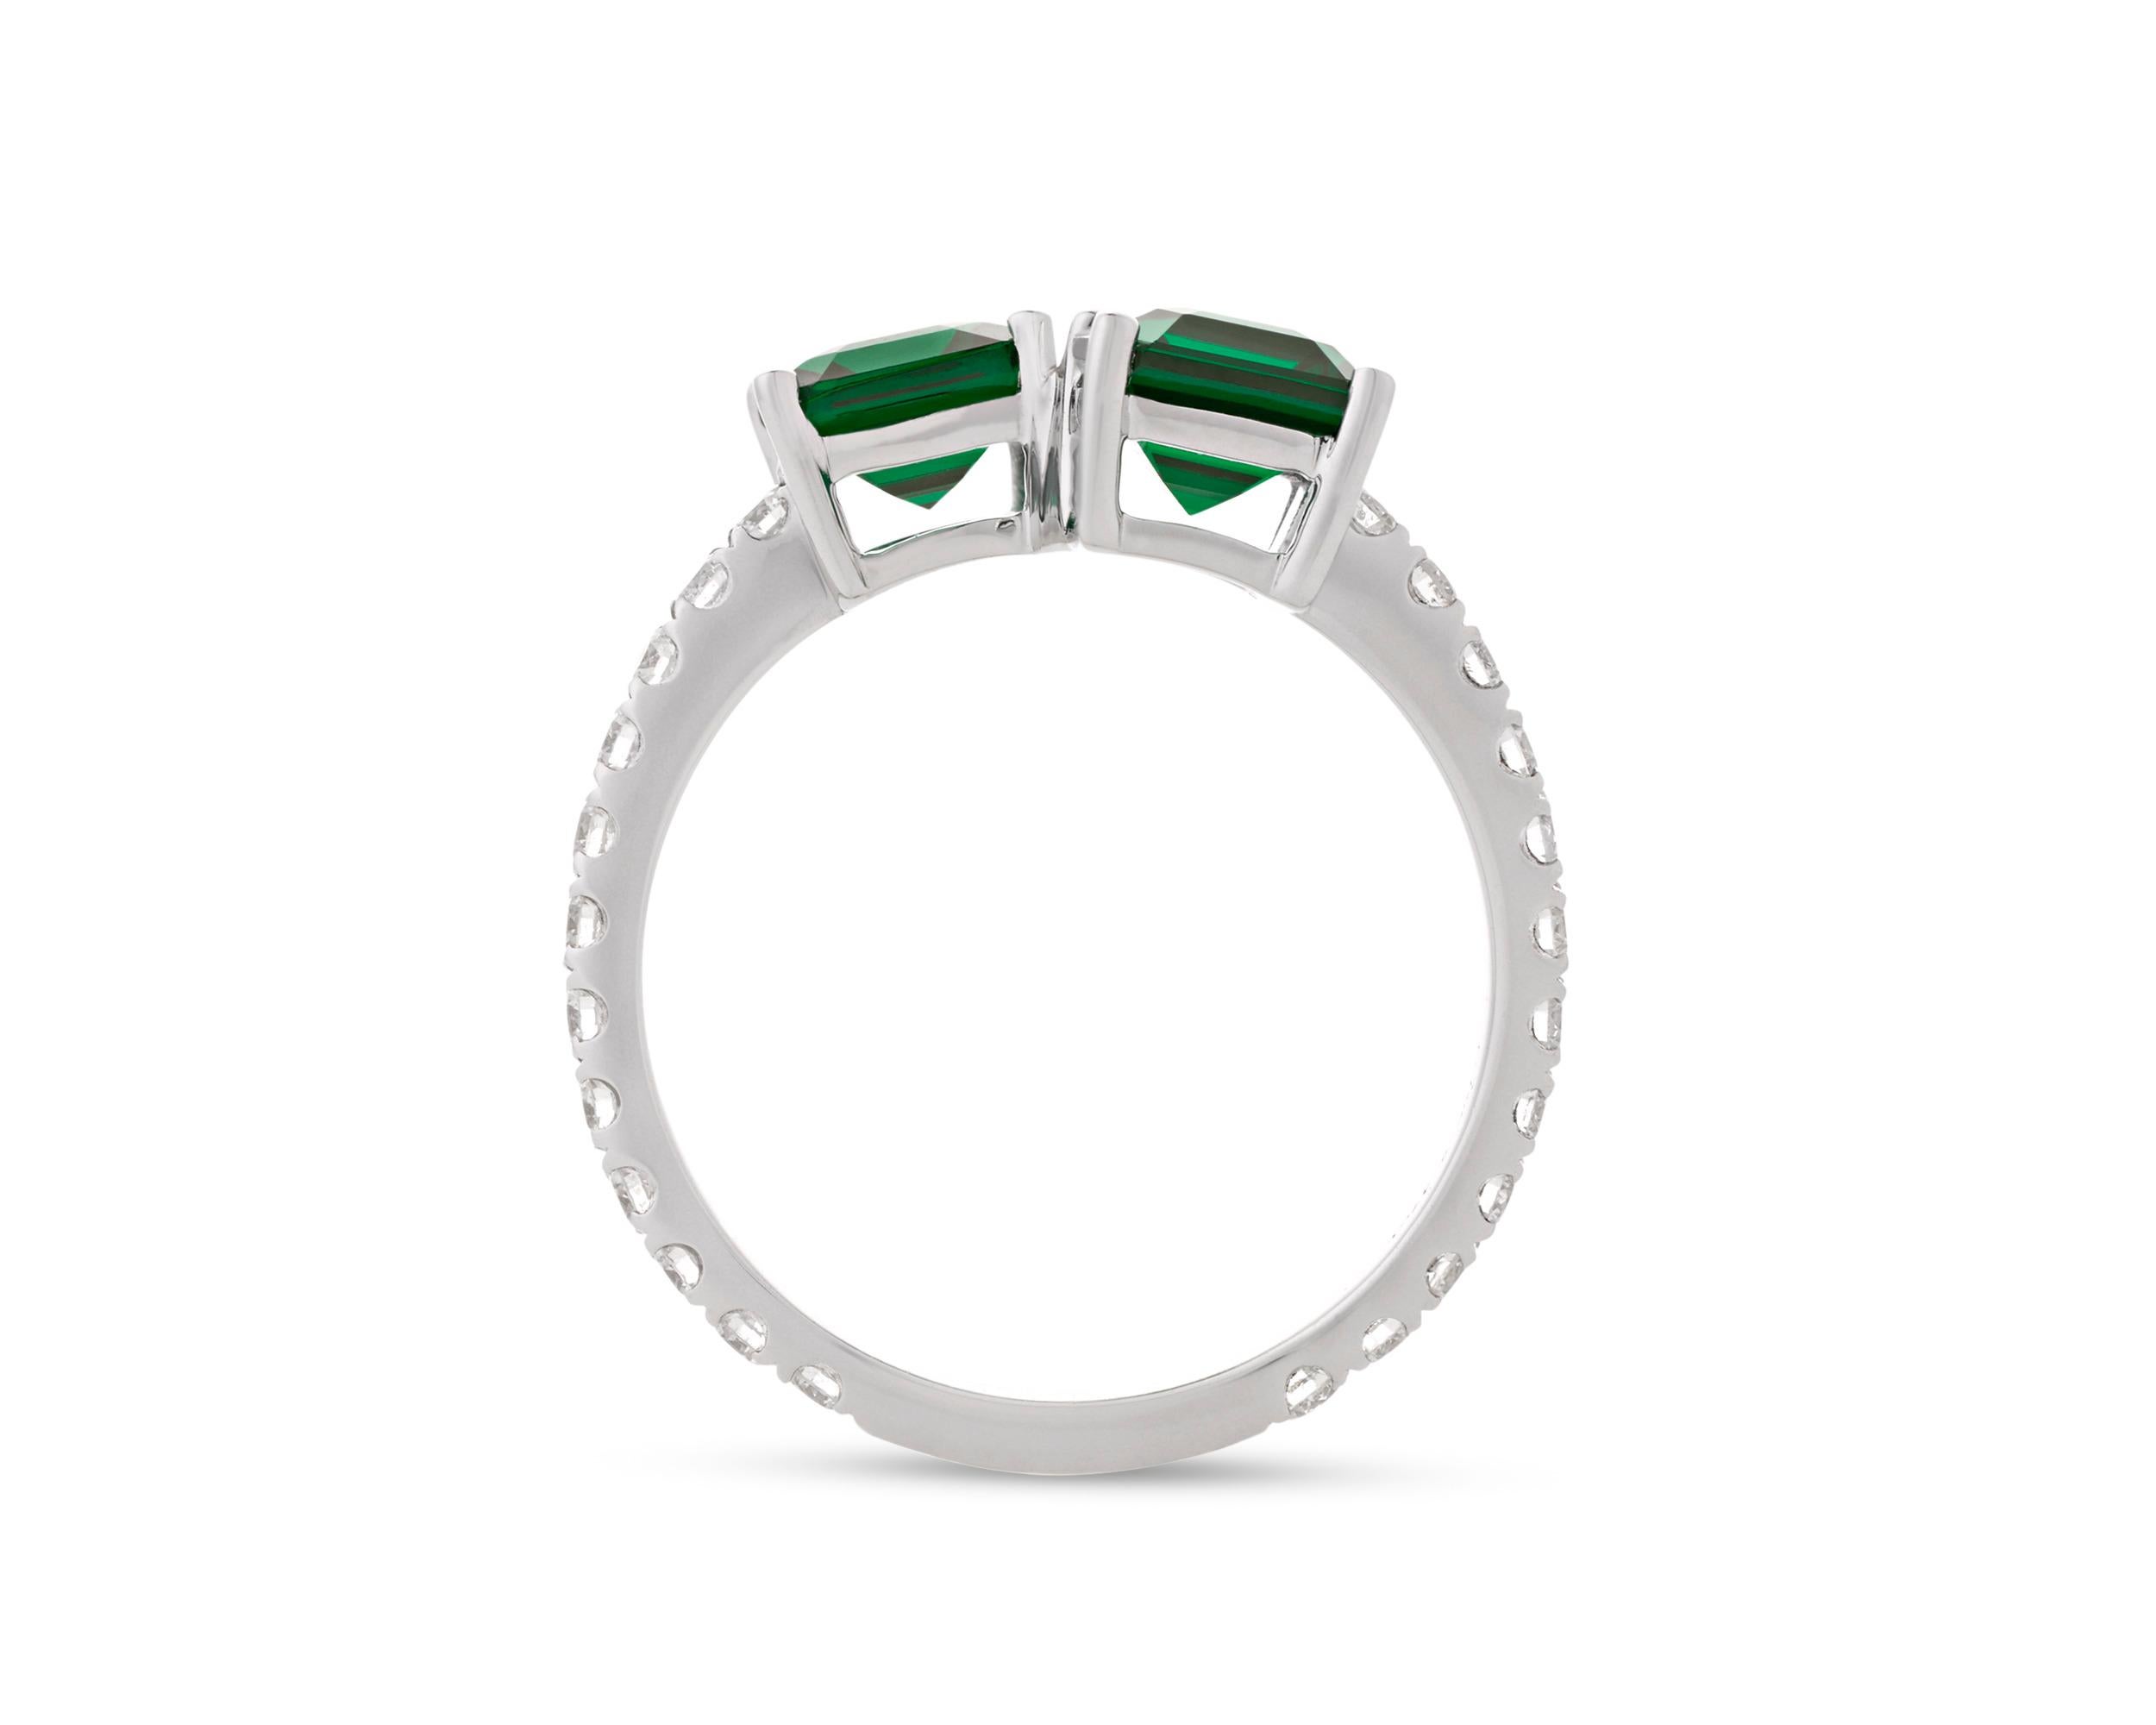 costco emerald ring